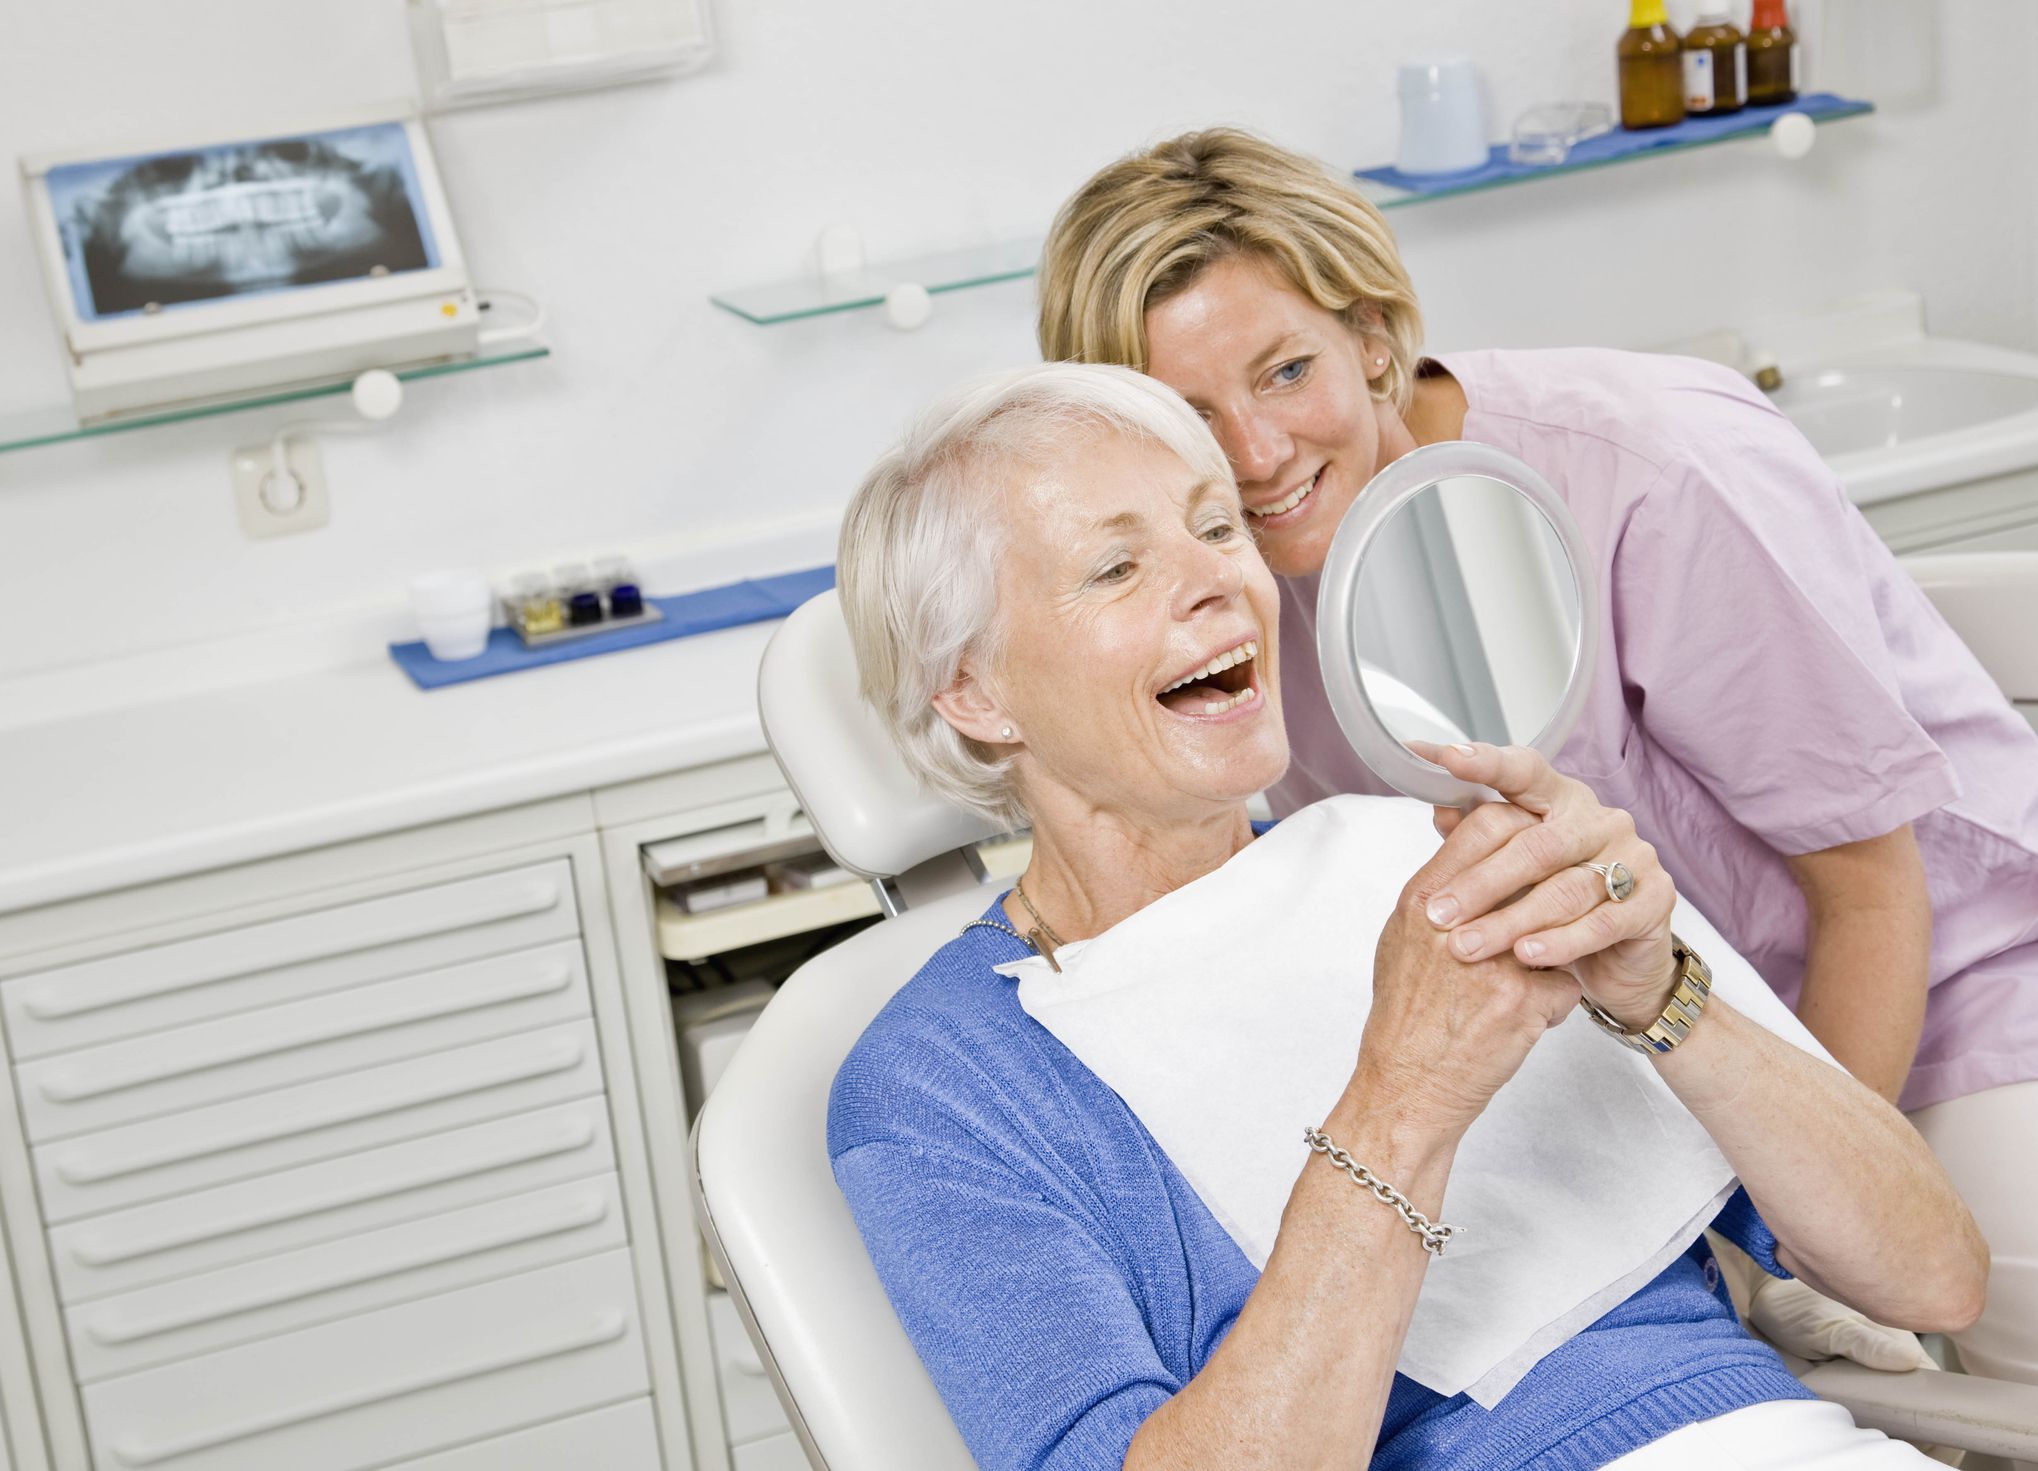 Best Dental Insurance for Seniors in 2018